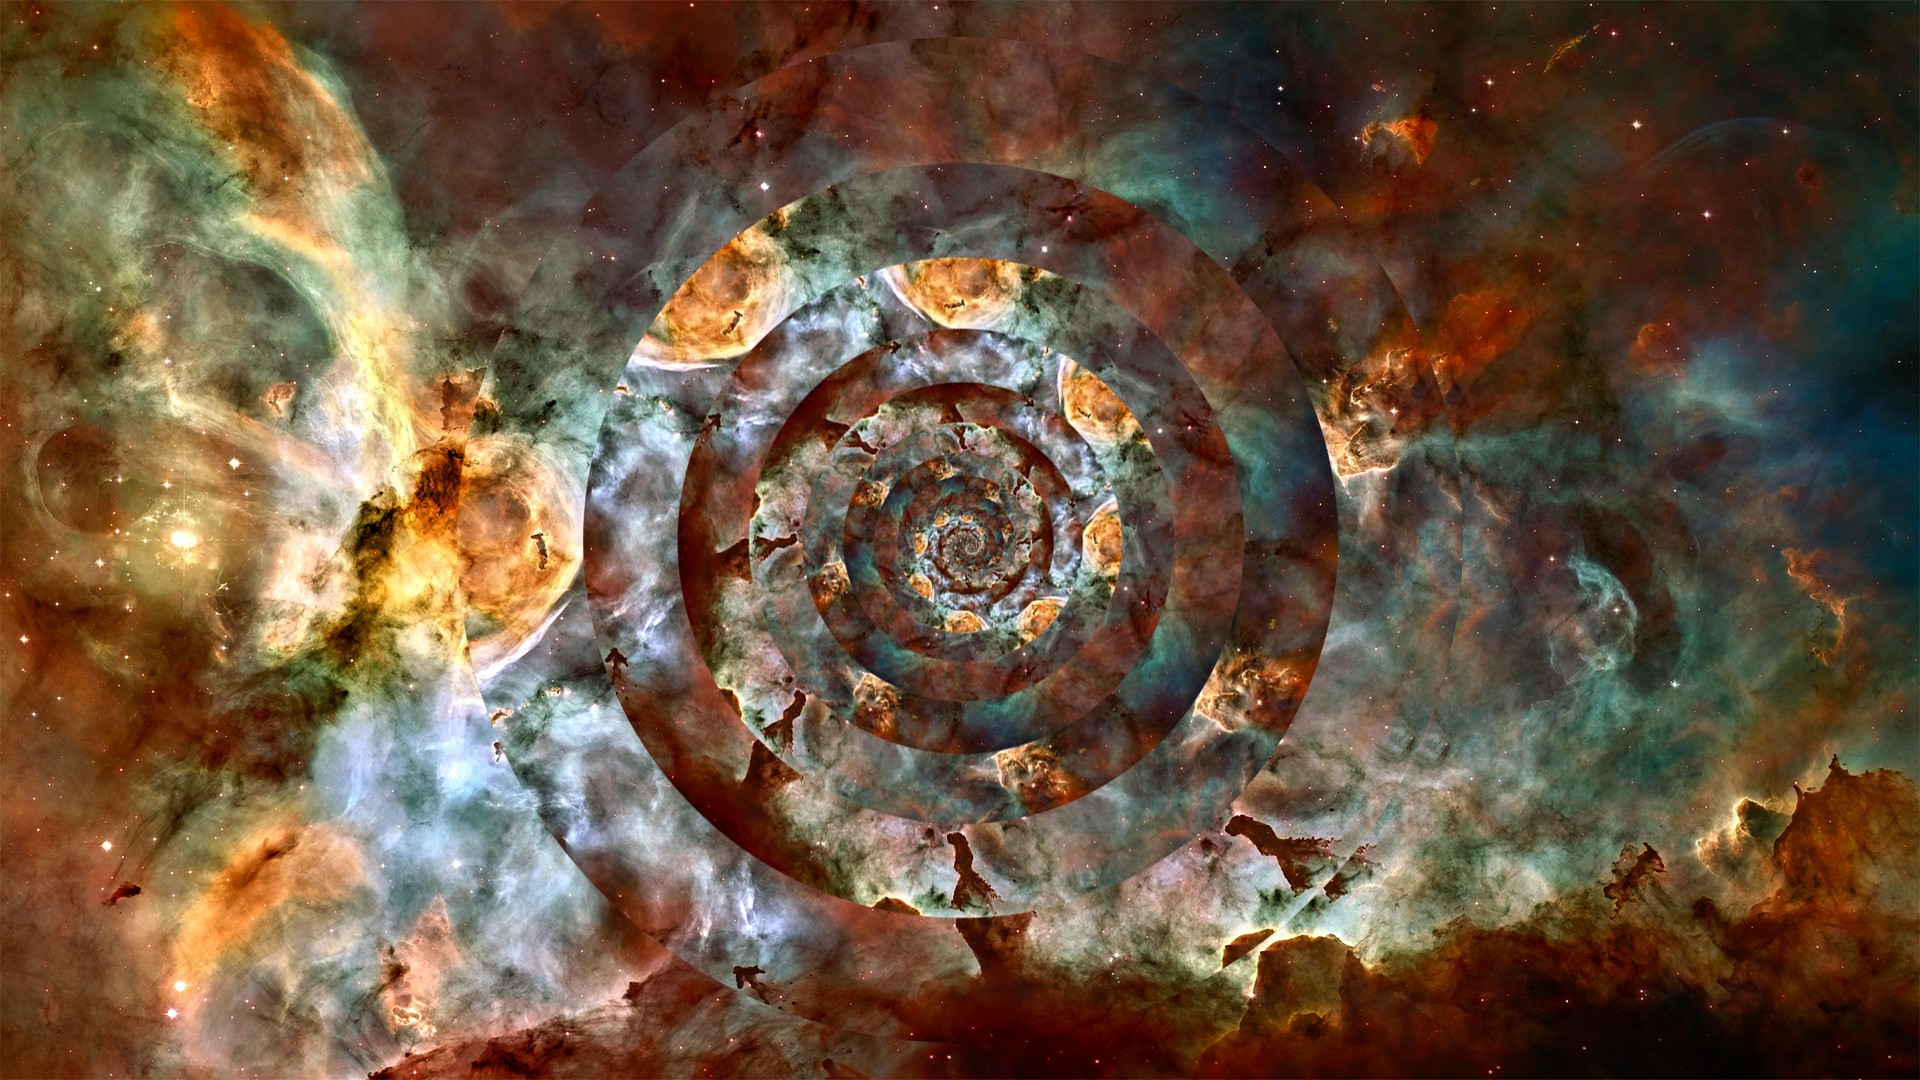 Carina Nebula , HD Wallpaper & Backgrounds